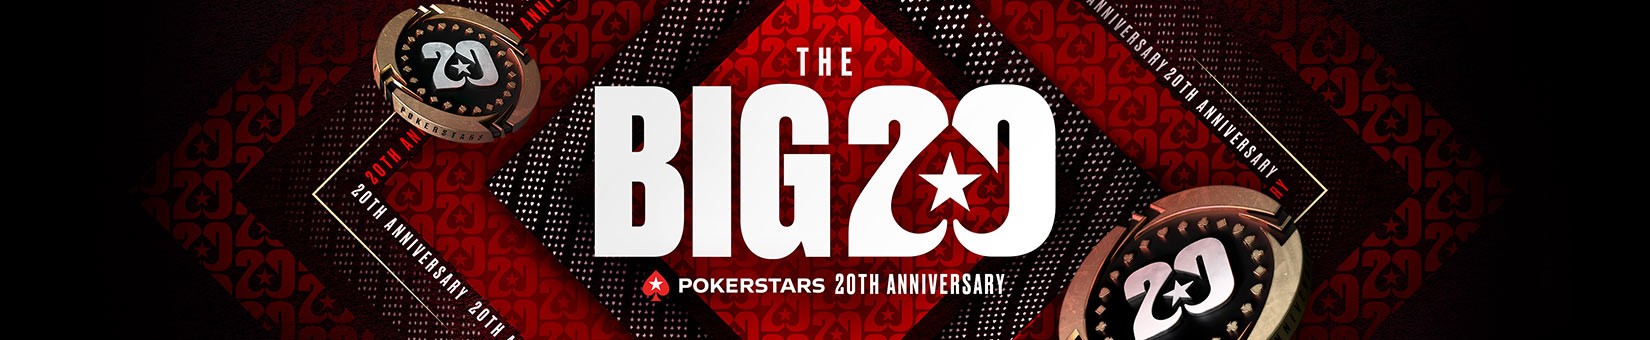 PokerStars Big 20